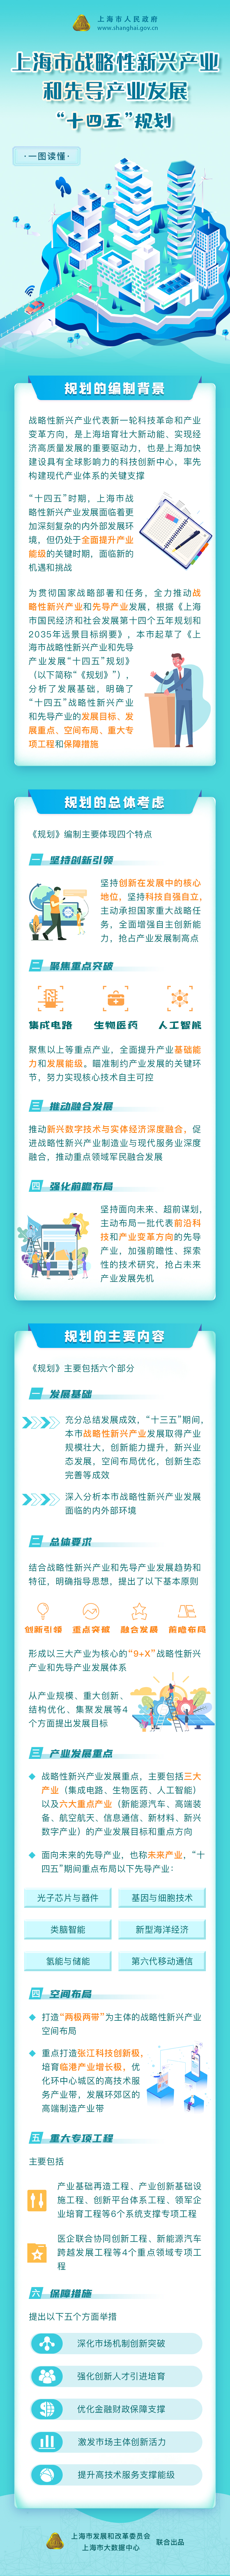 一图读懂《上海市战略性新兴产业和先导产业发展“十四五”规划》.jpg